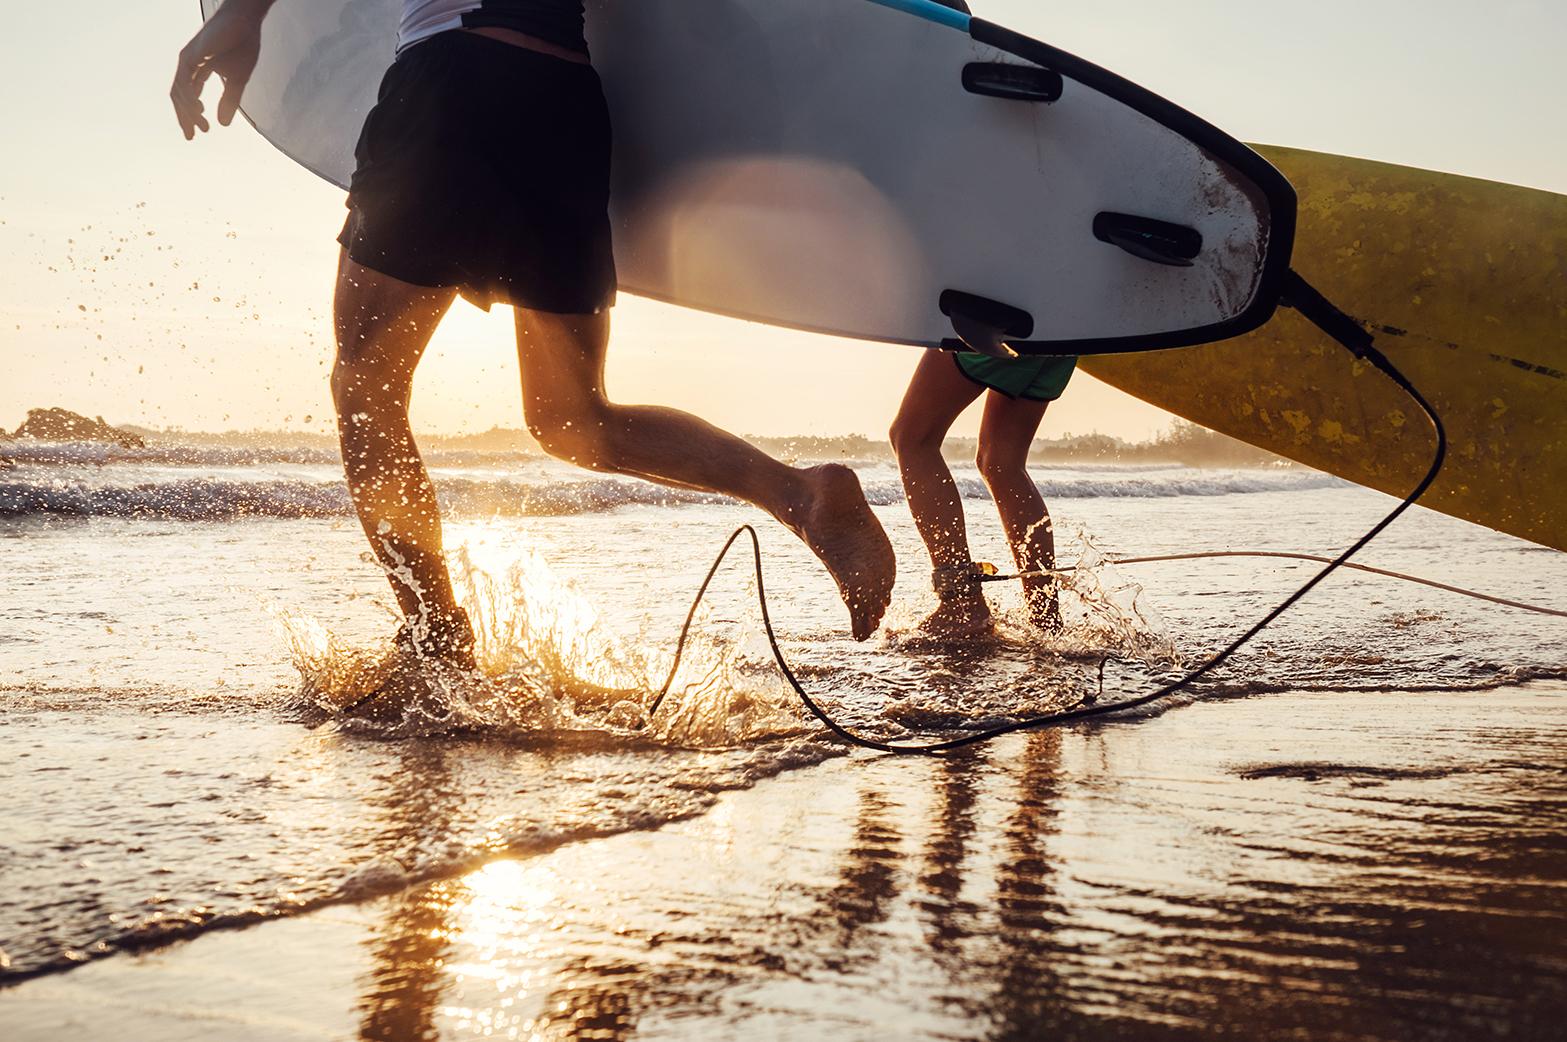 Märkäpuku päälle ja aaltoja jahtaamaan! Tiesitkö, että kotimaan parhaat surffikohteet löytyvät Porista?